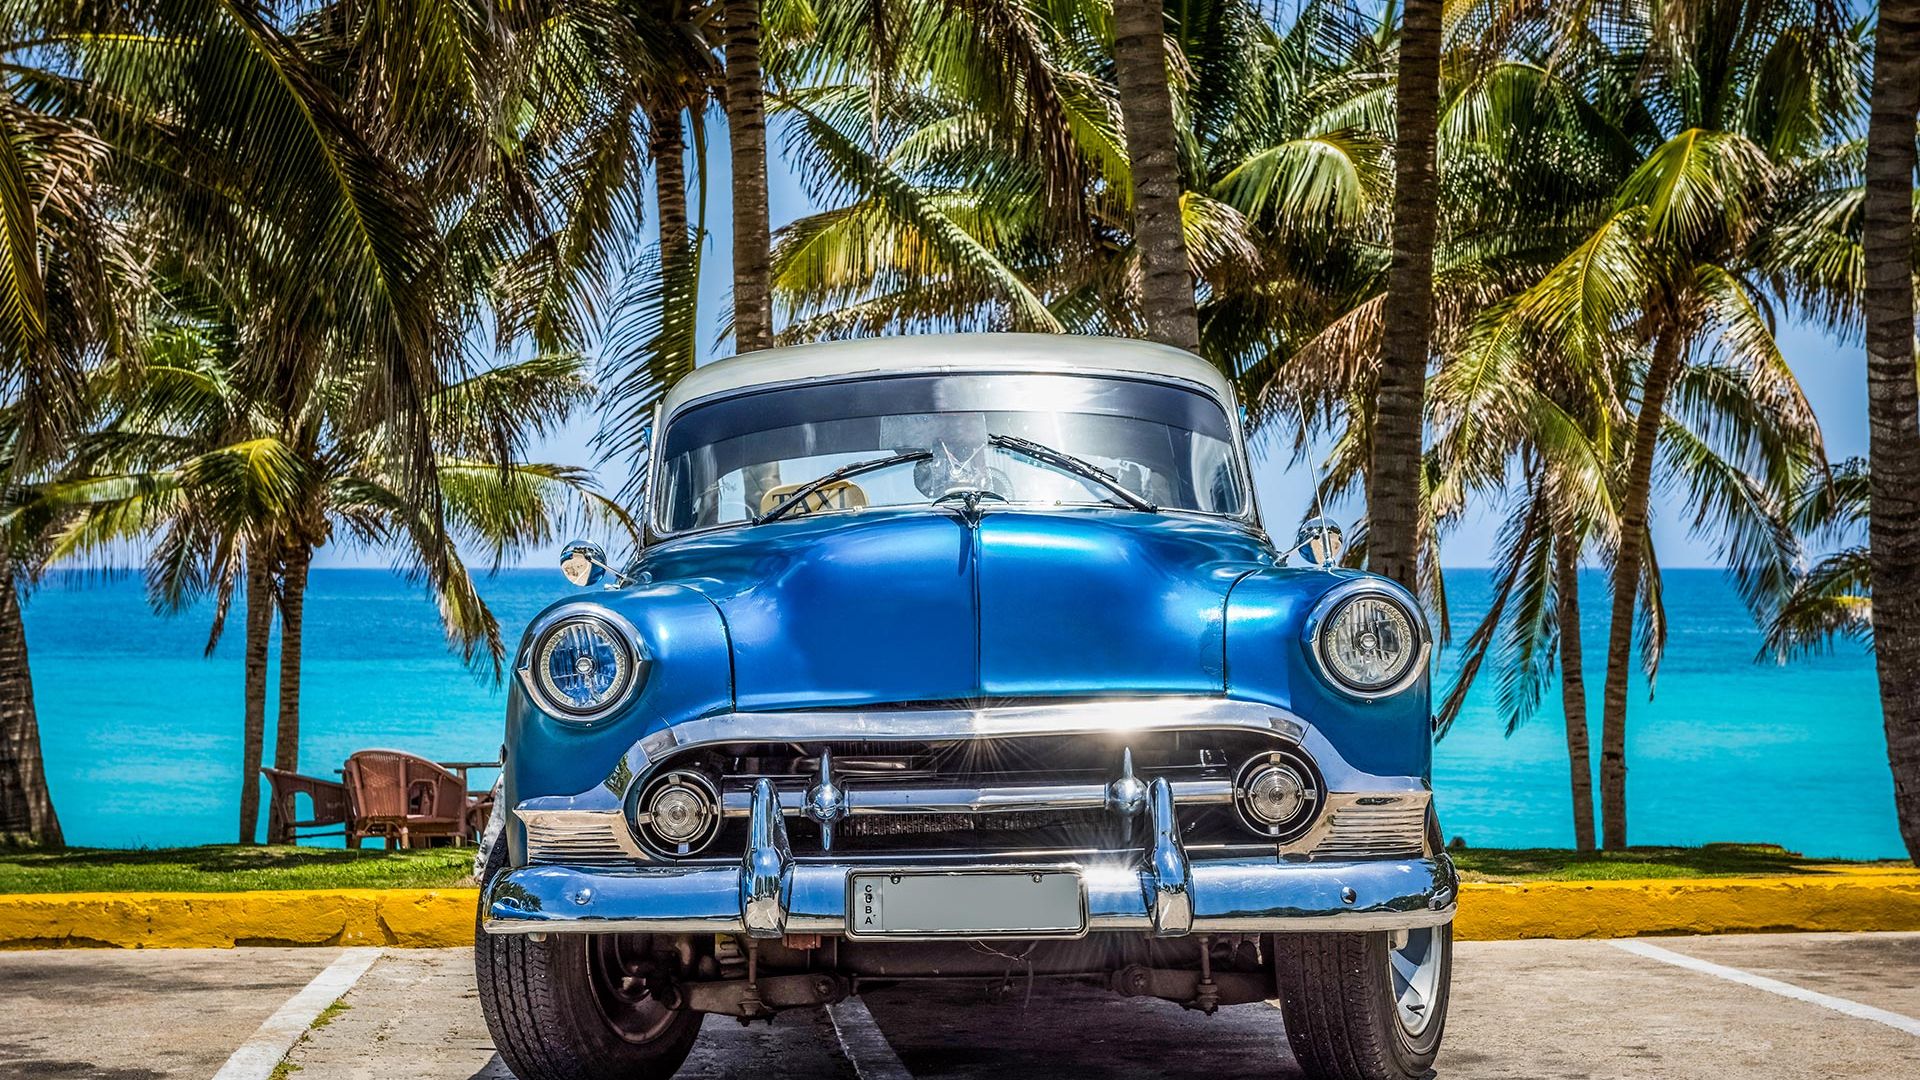 Sejur plaja Varadero, Cuba, 9 zile - 8 februarie 2022